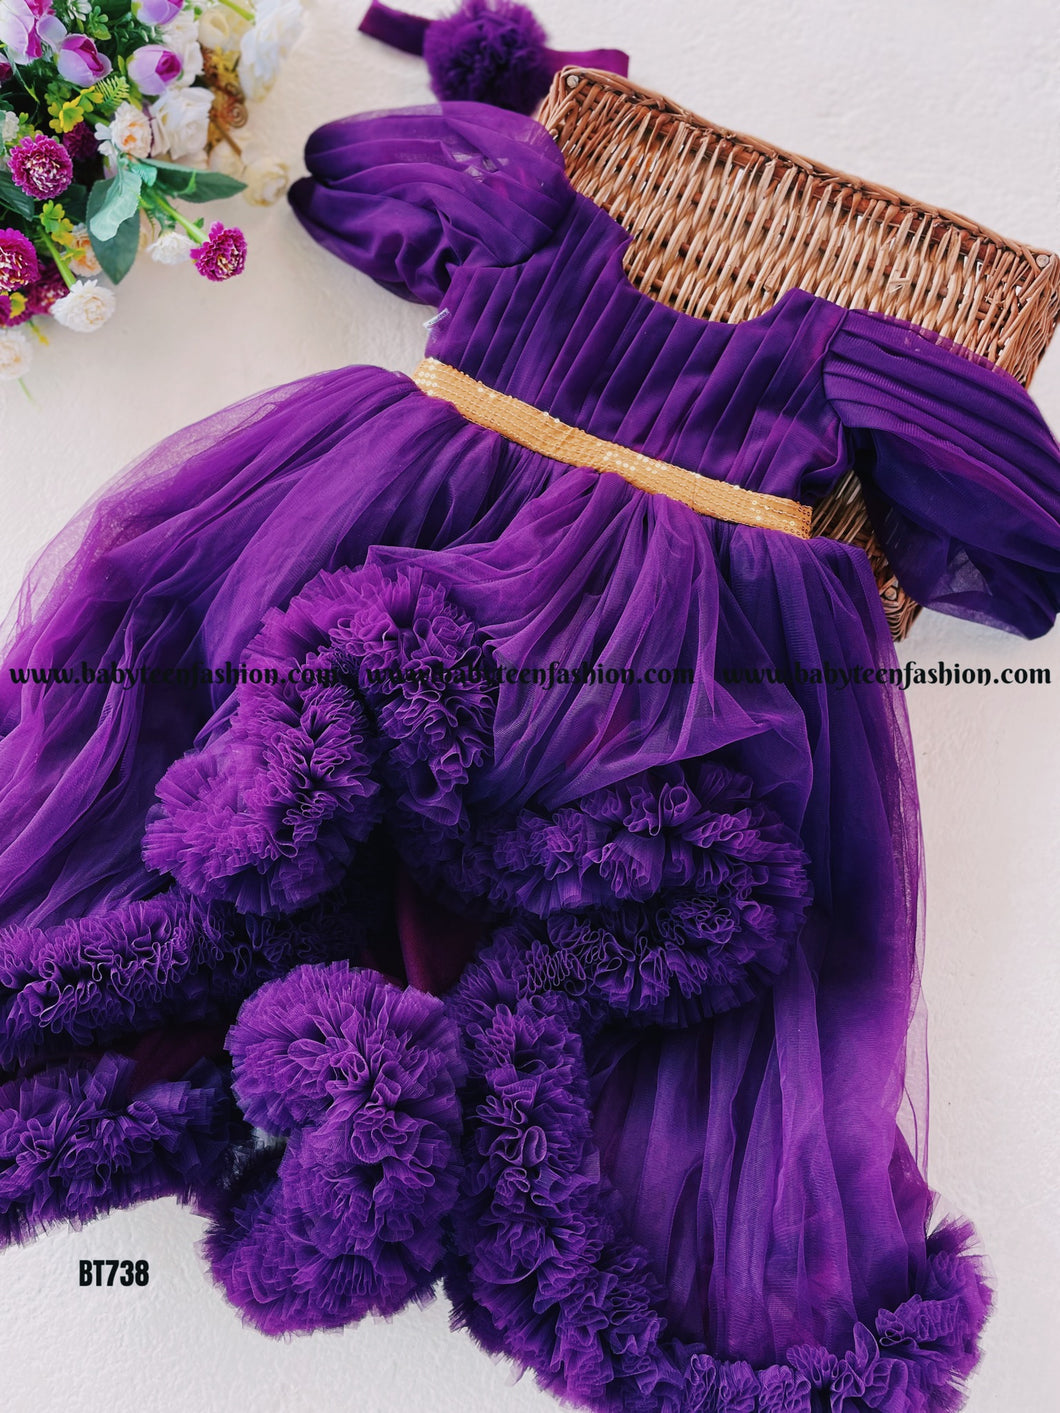 BT738 Regal Purple Festivity Frocks - Winter Party Elegance